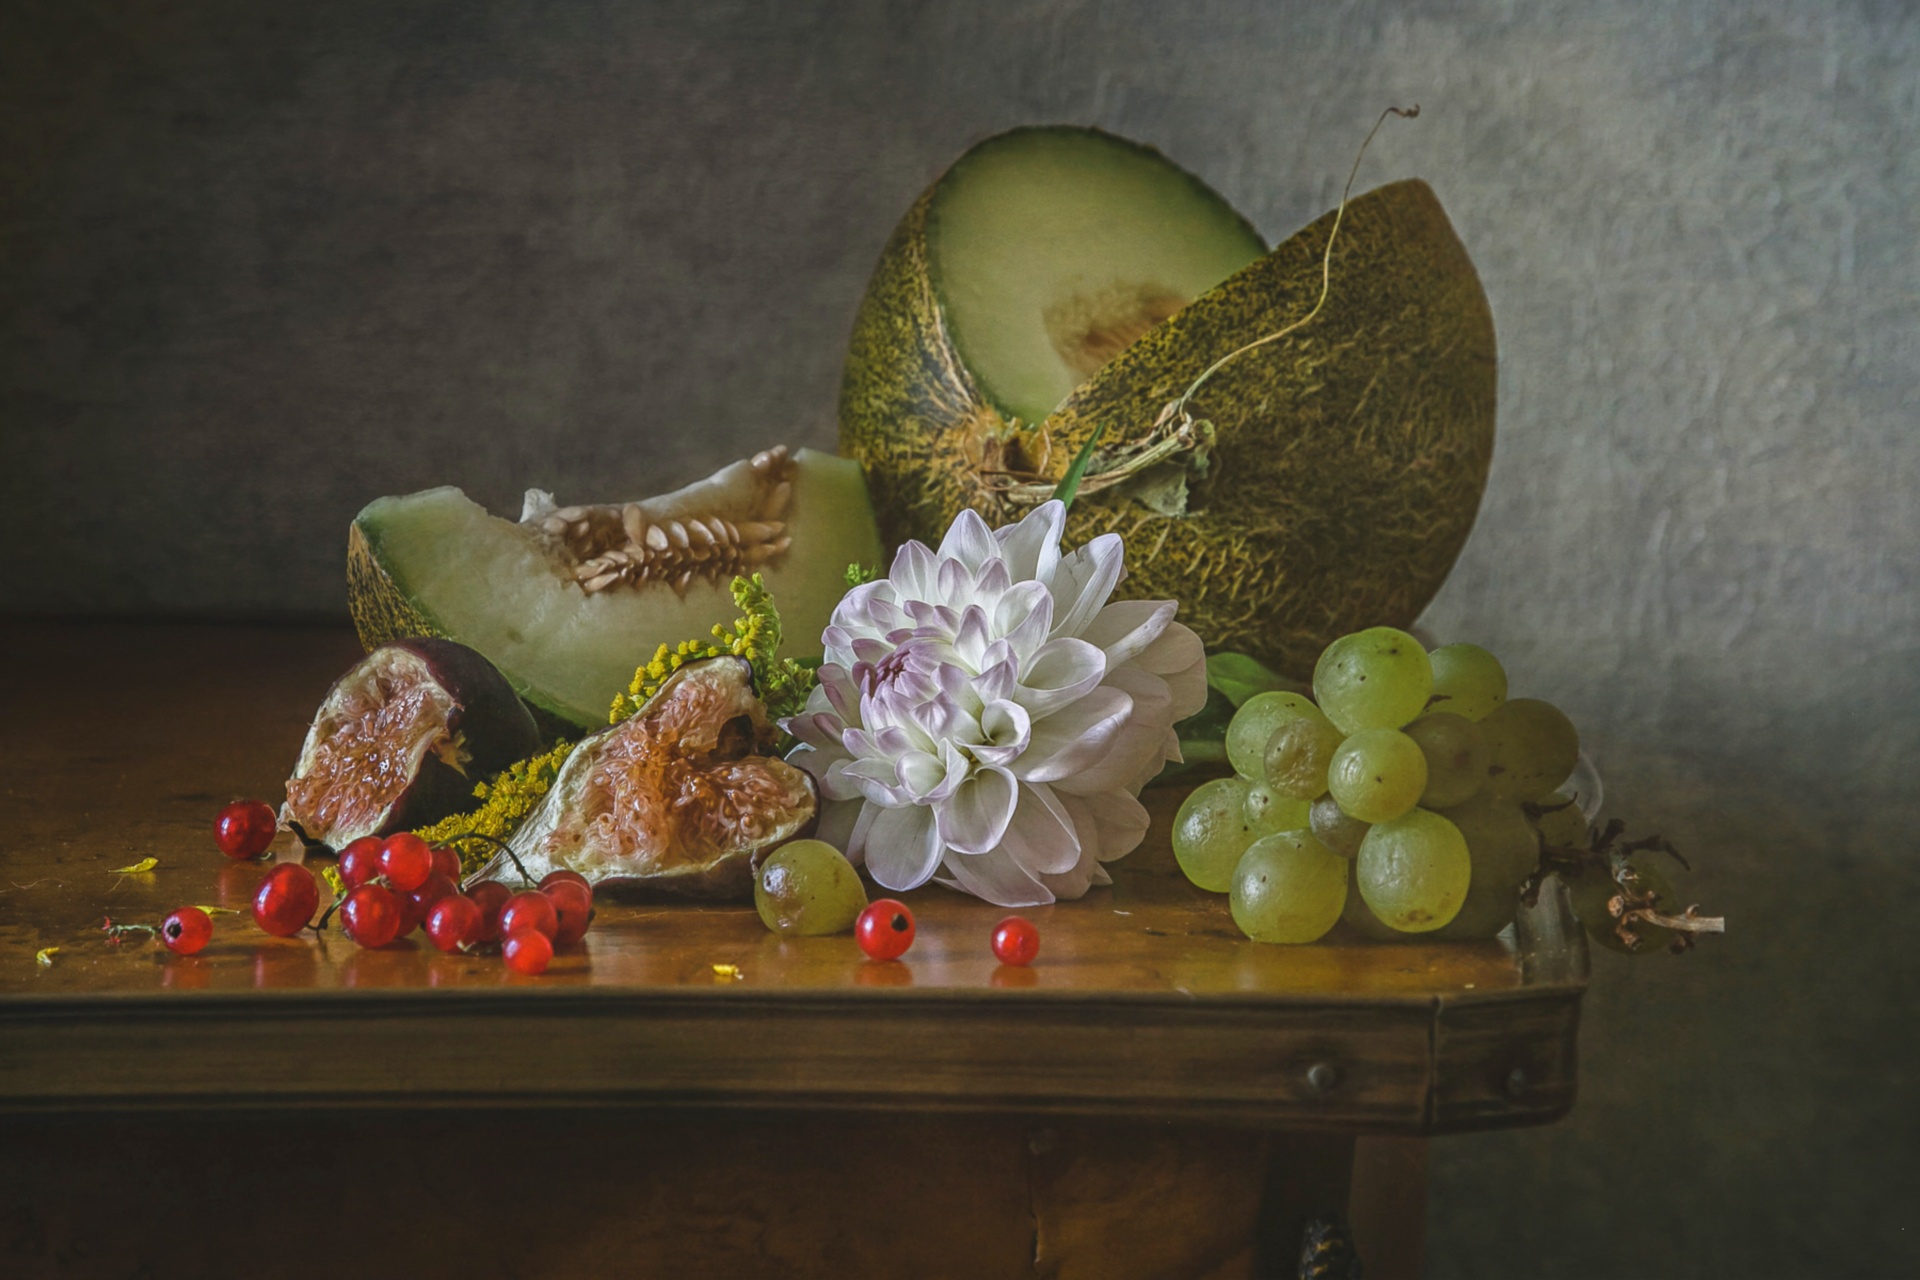 Currants Fig Fruit Grapes Melon Still Life 1920x1280